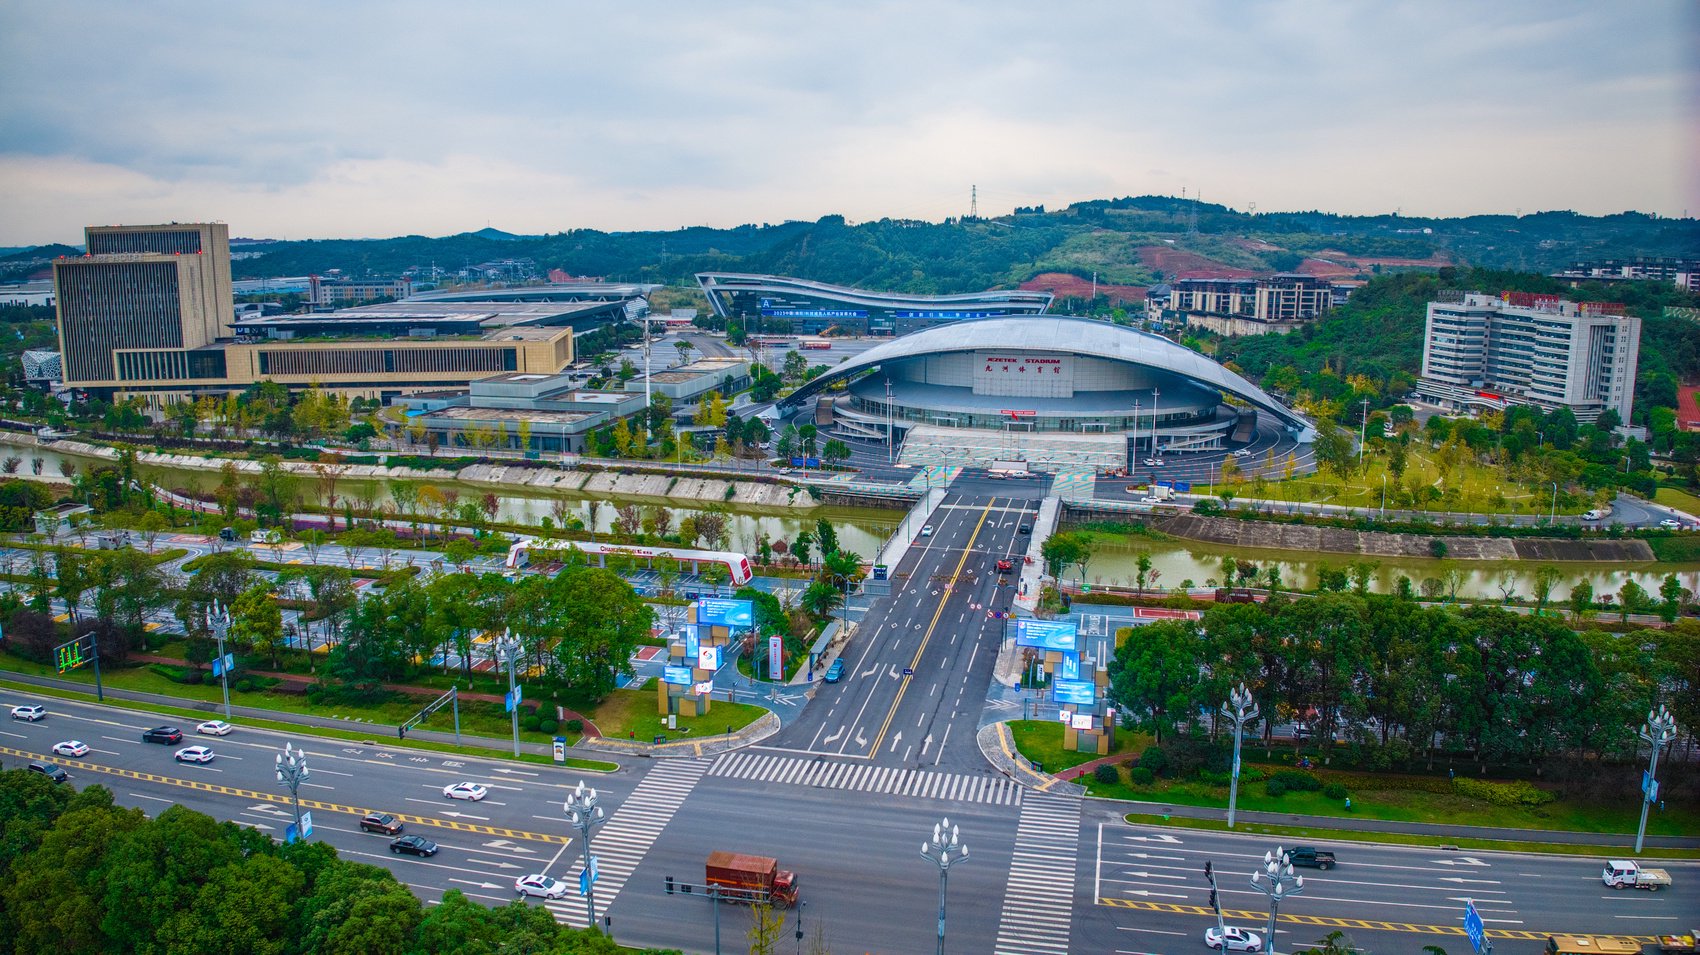 11月13日,第十一届中国(绵阳)科技城国际科技博览会会场正在布置中